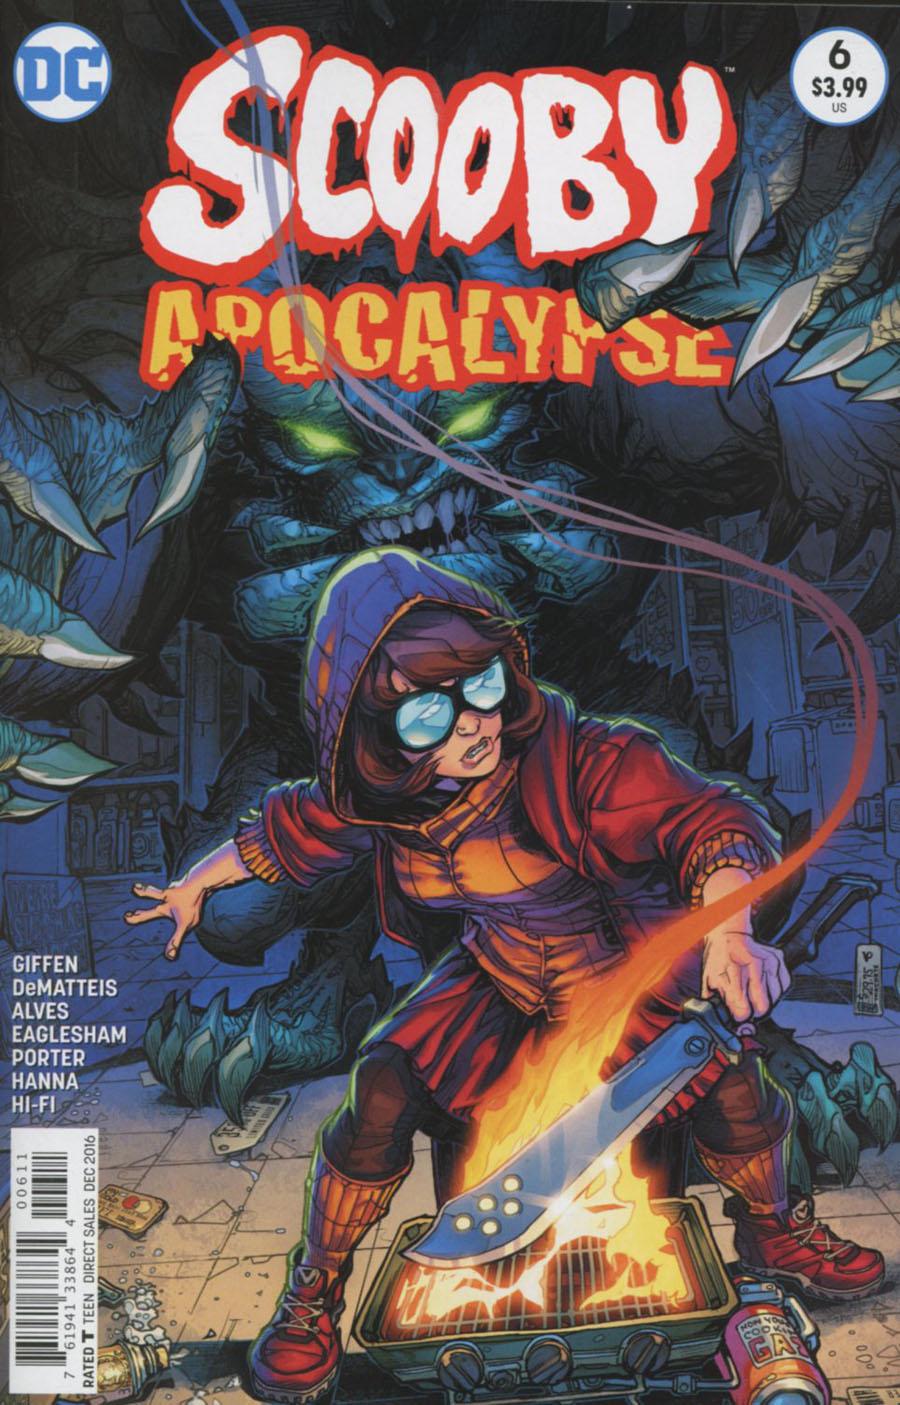 Scooby Apocalypse Vol. 1 #6